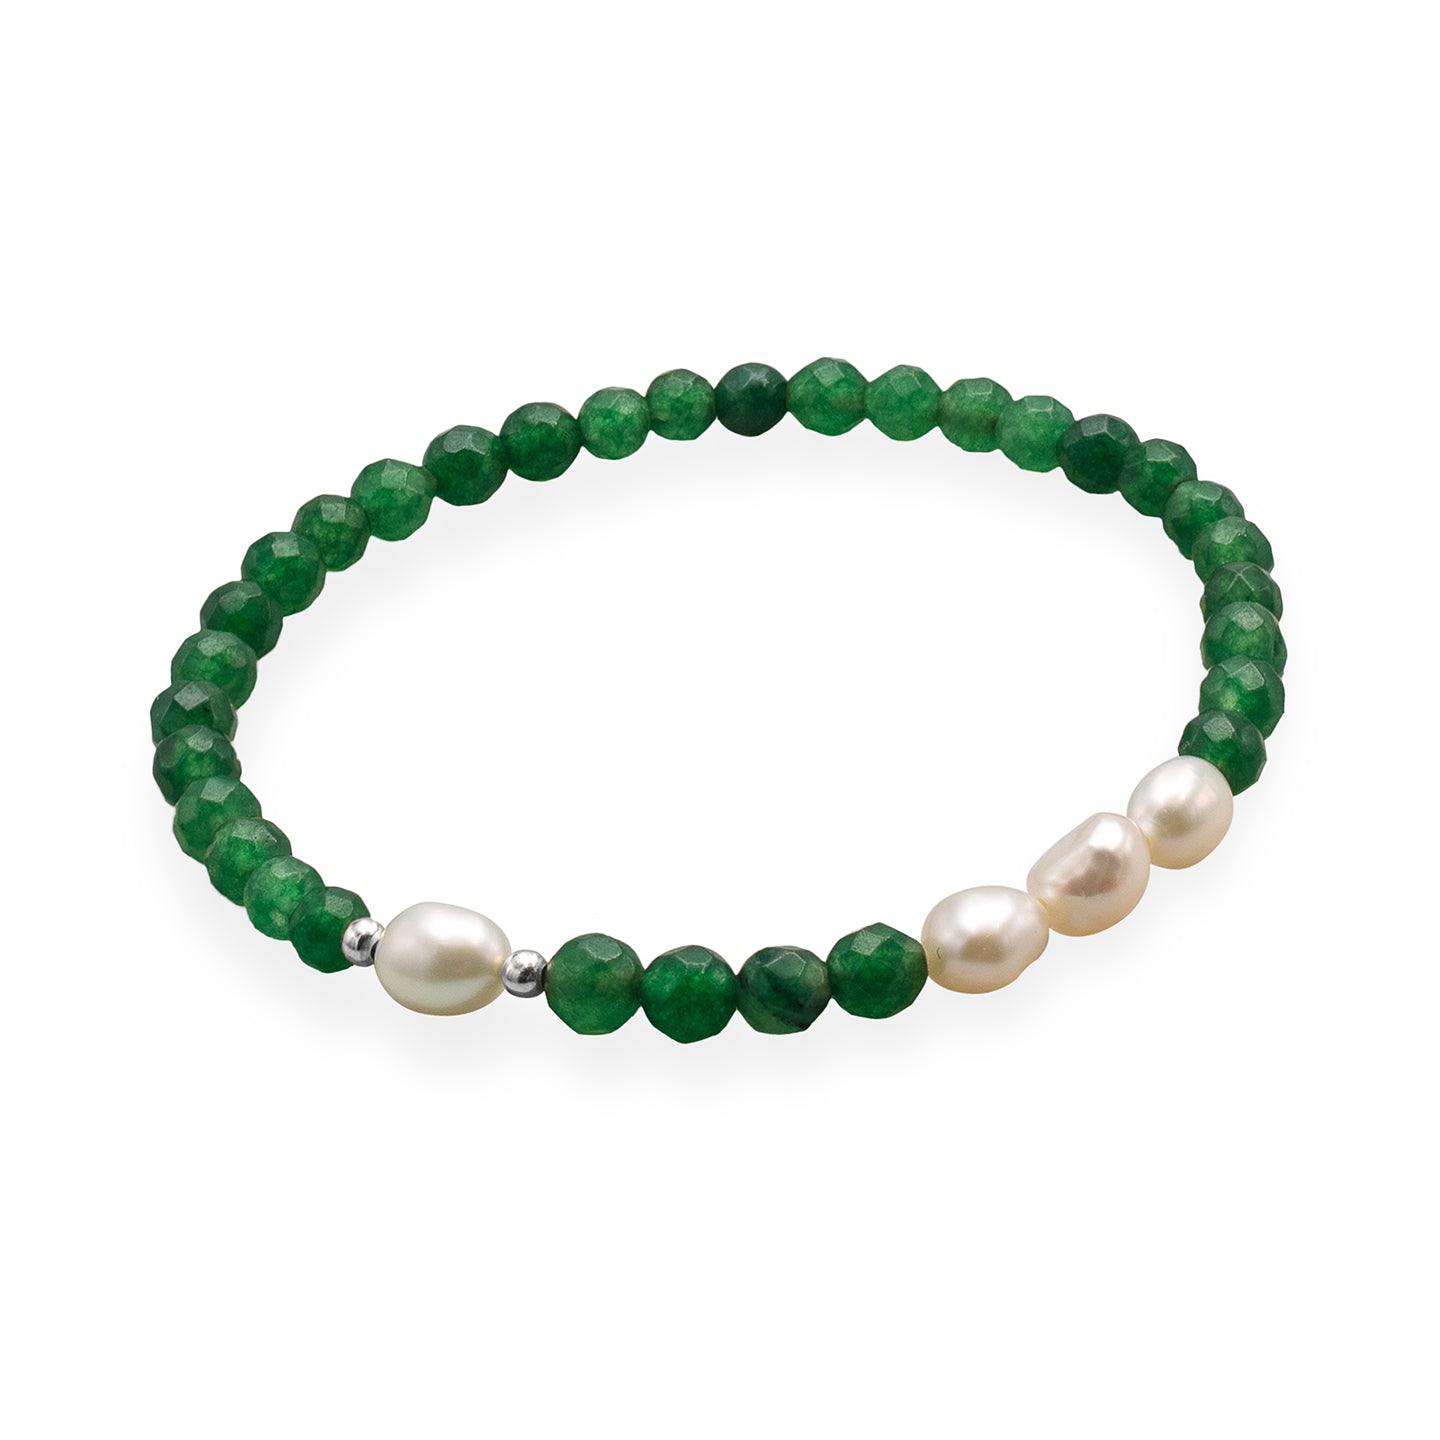 Bratara argint cu perle si agat verde smarald Green Spirit